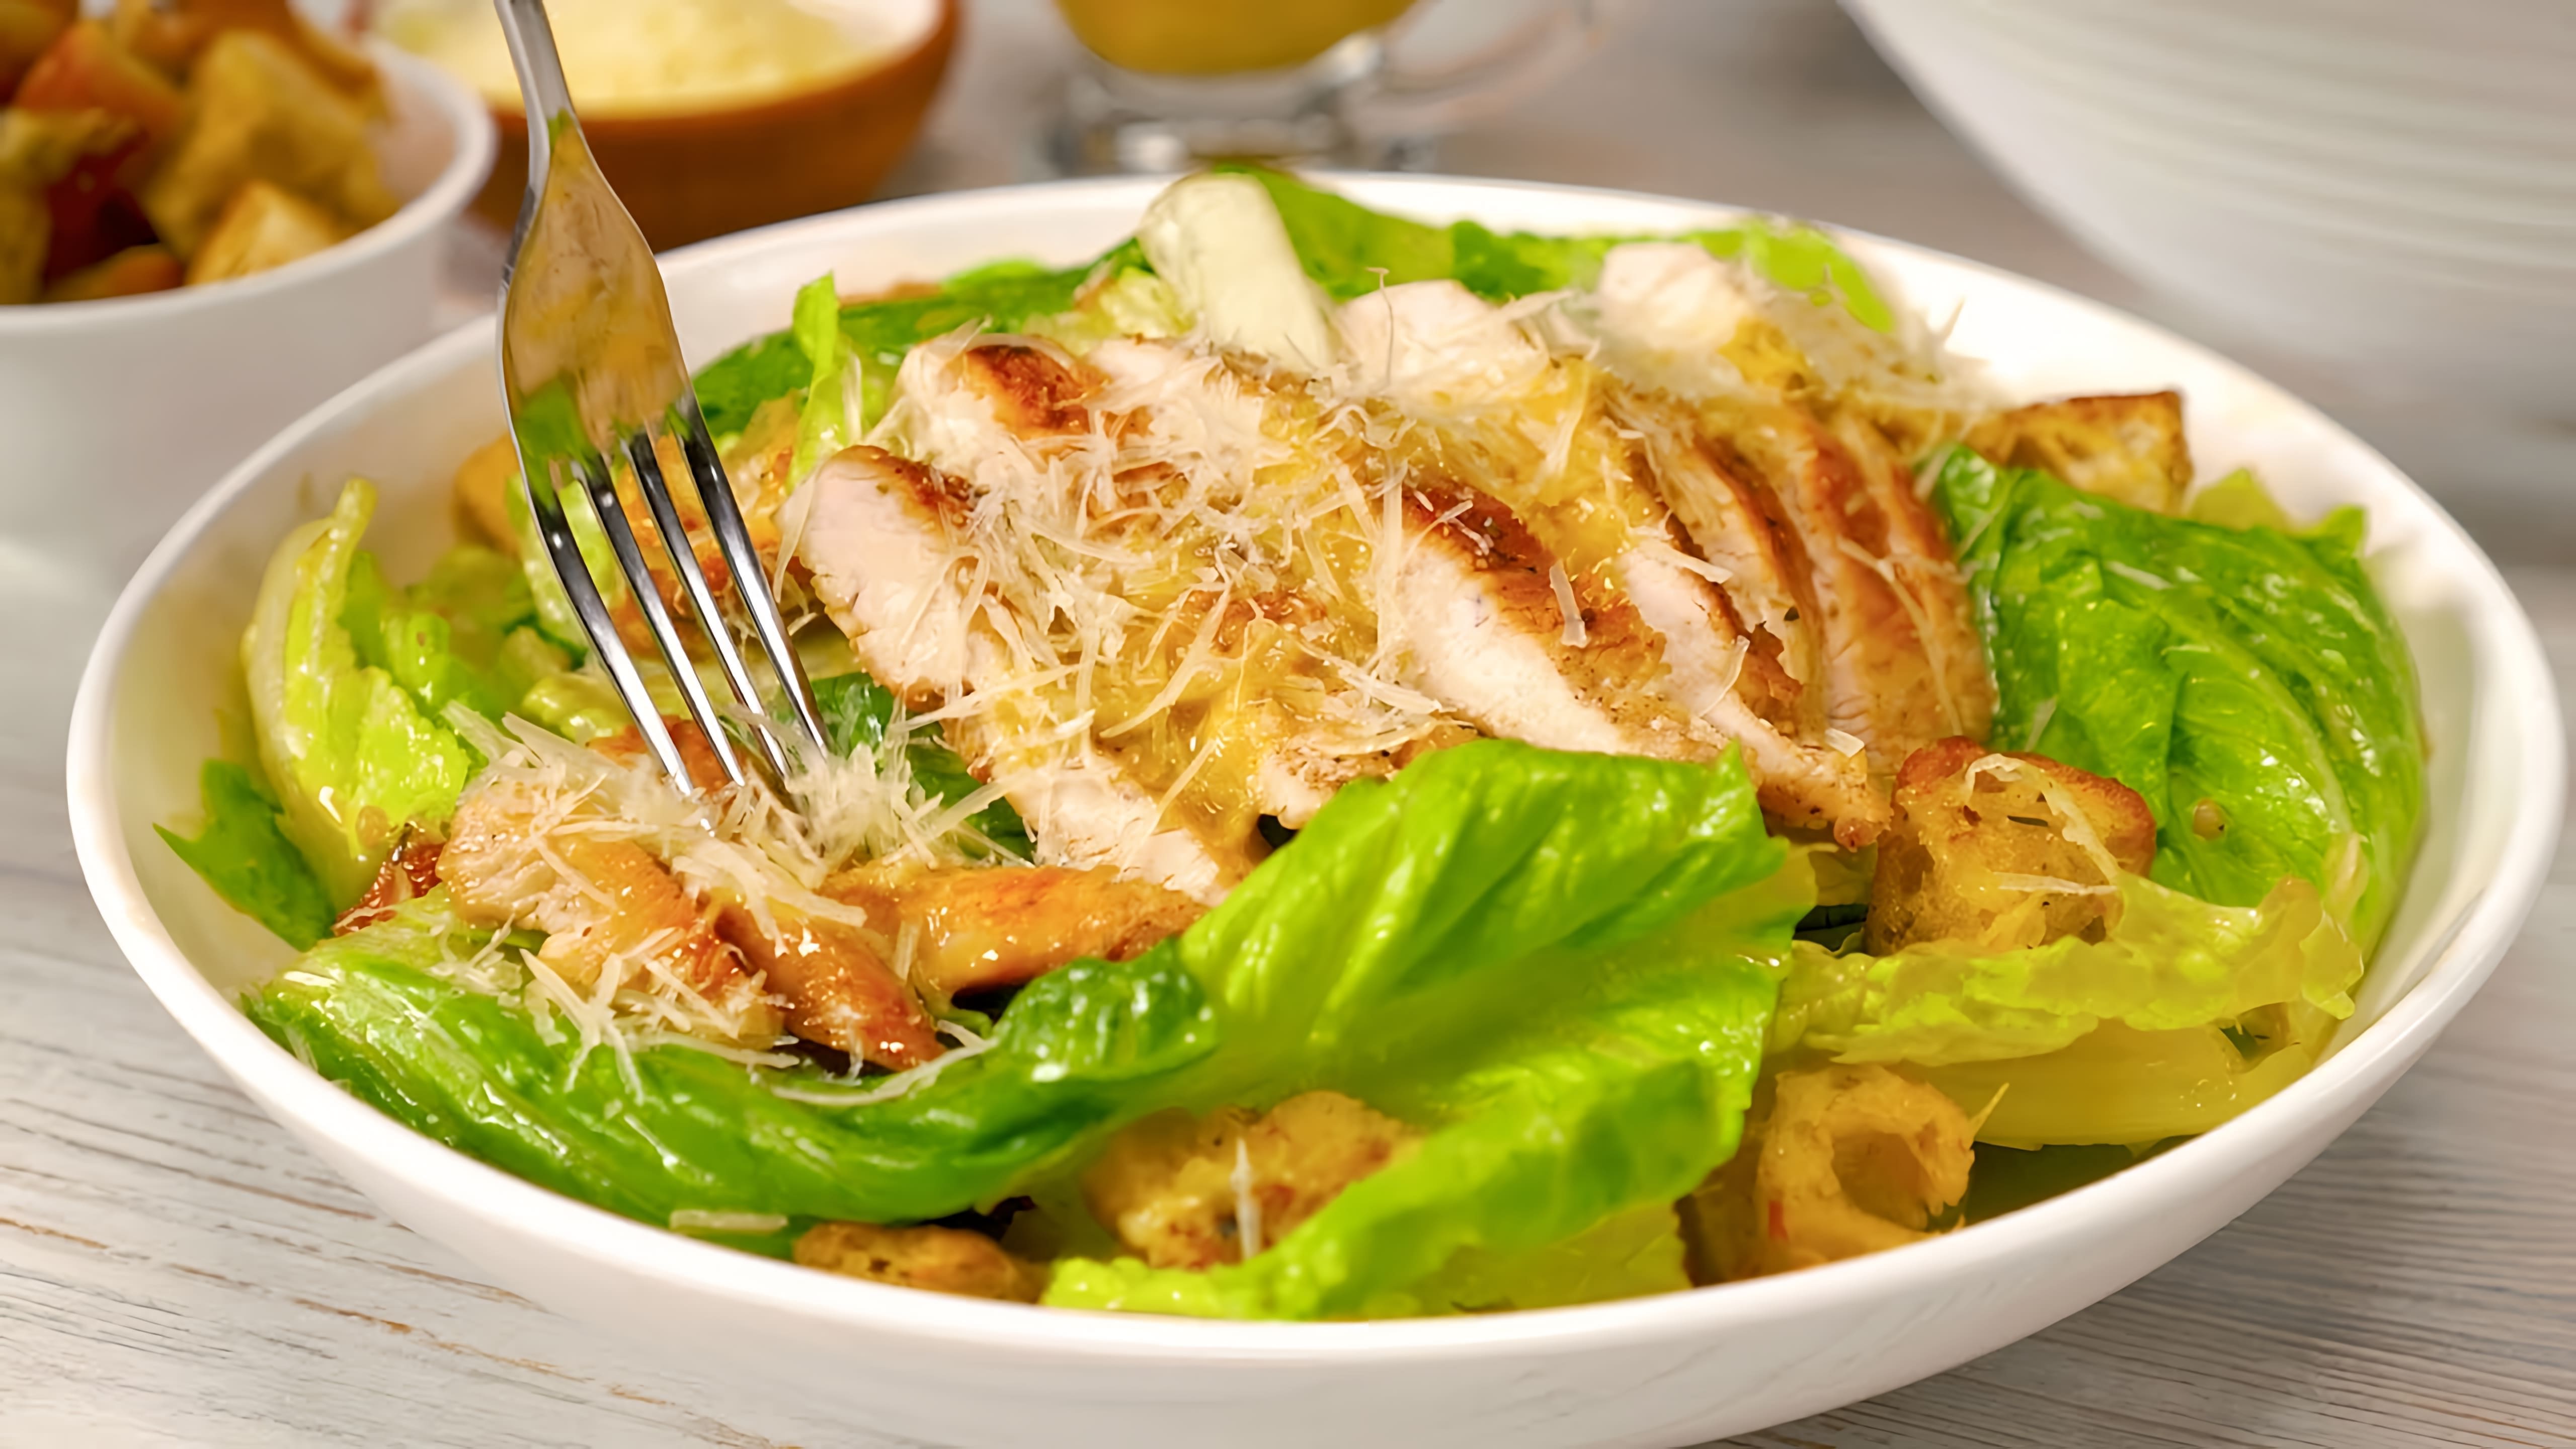 В этом видео демонстрируется рецепт приготовления знаменитого салата "Цезарь" с курицей